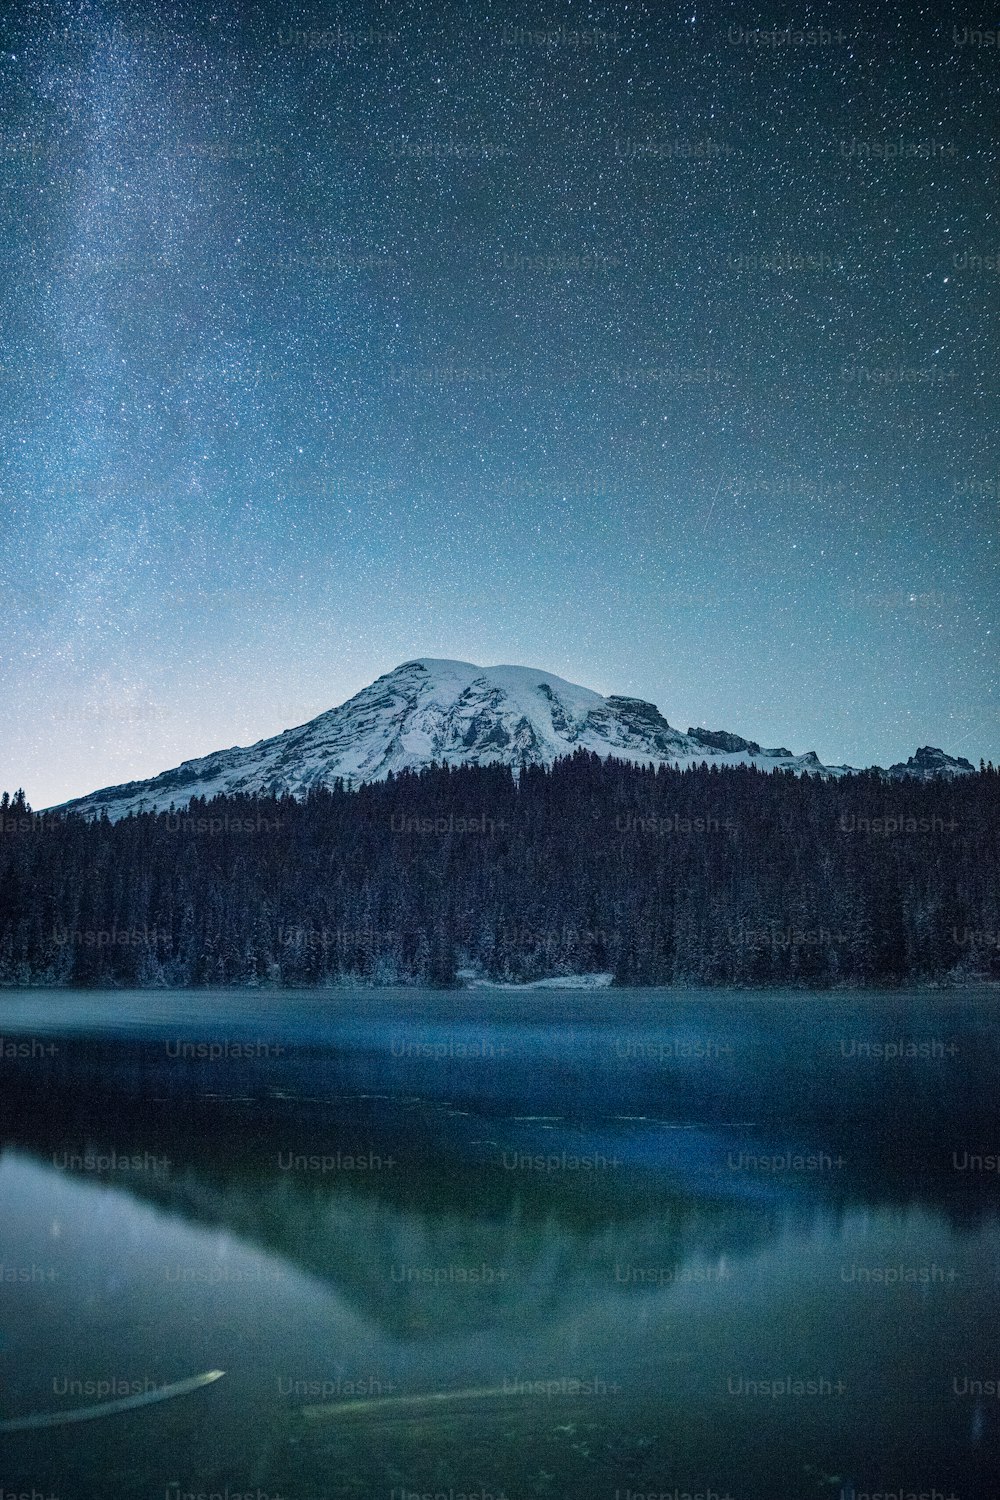 Ein Berg mit einem See davor unter einem Nachthimmel